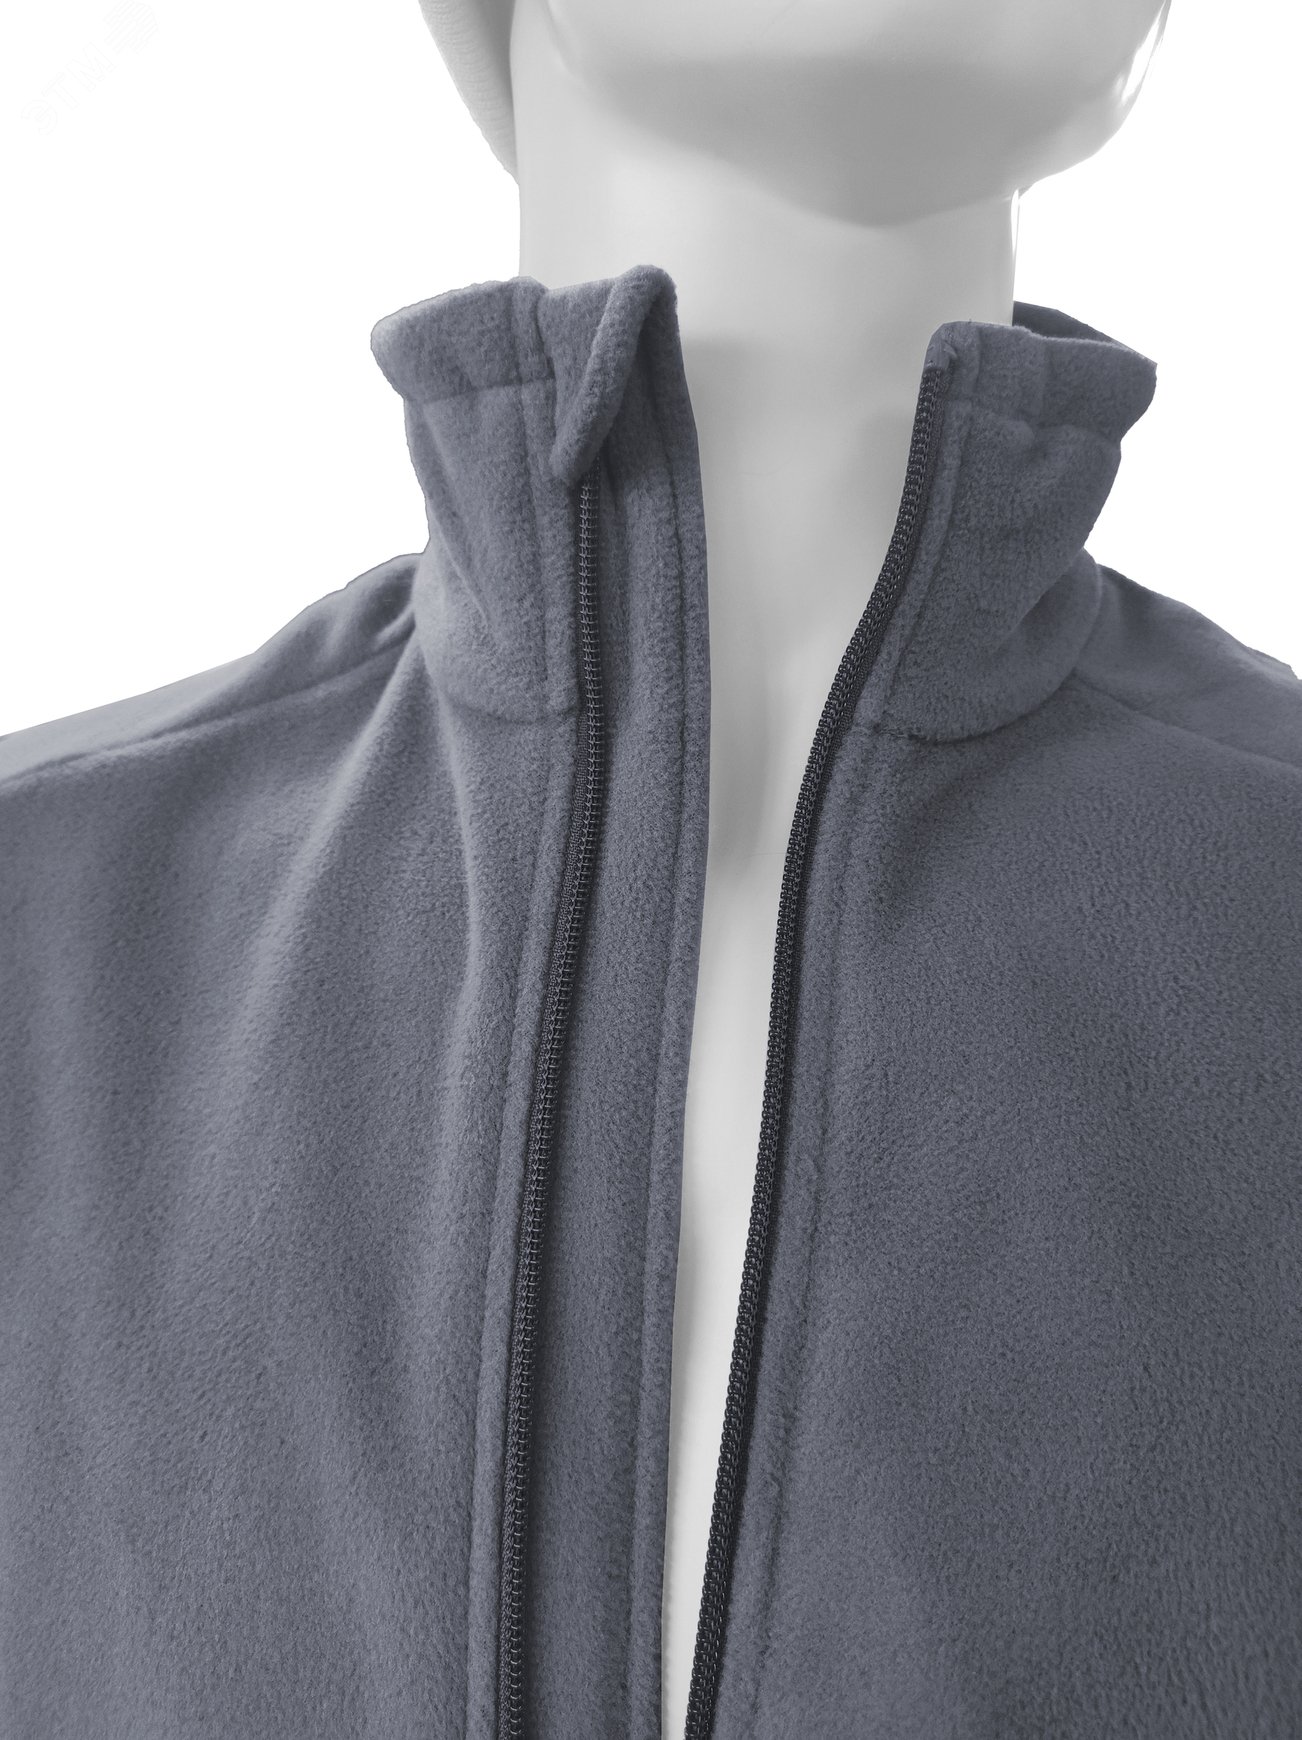 Куртка флисовая арт. JF-01 на молнии цв. серый 44-46 р. S 142302 Эталон-Спецодежда - превью 9